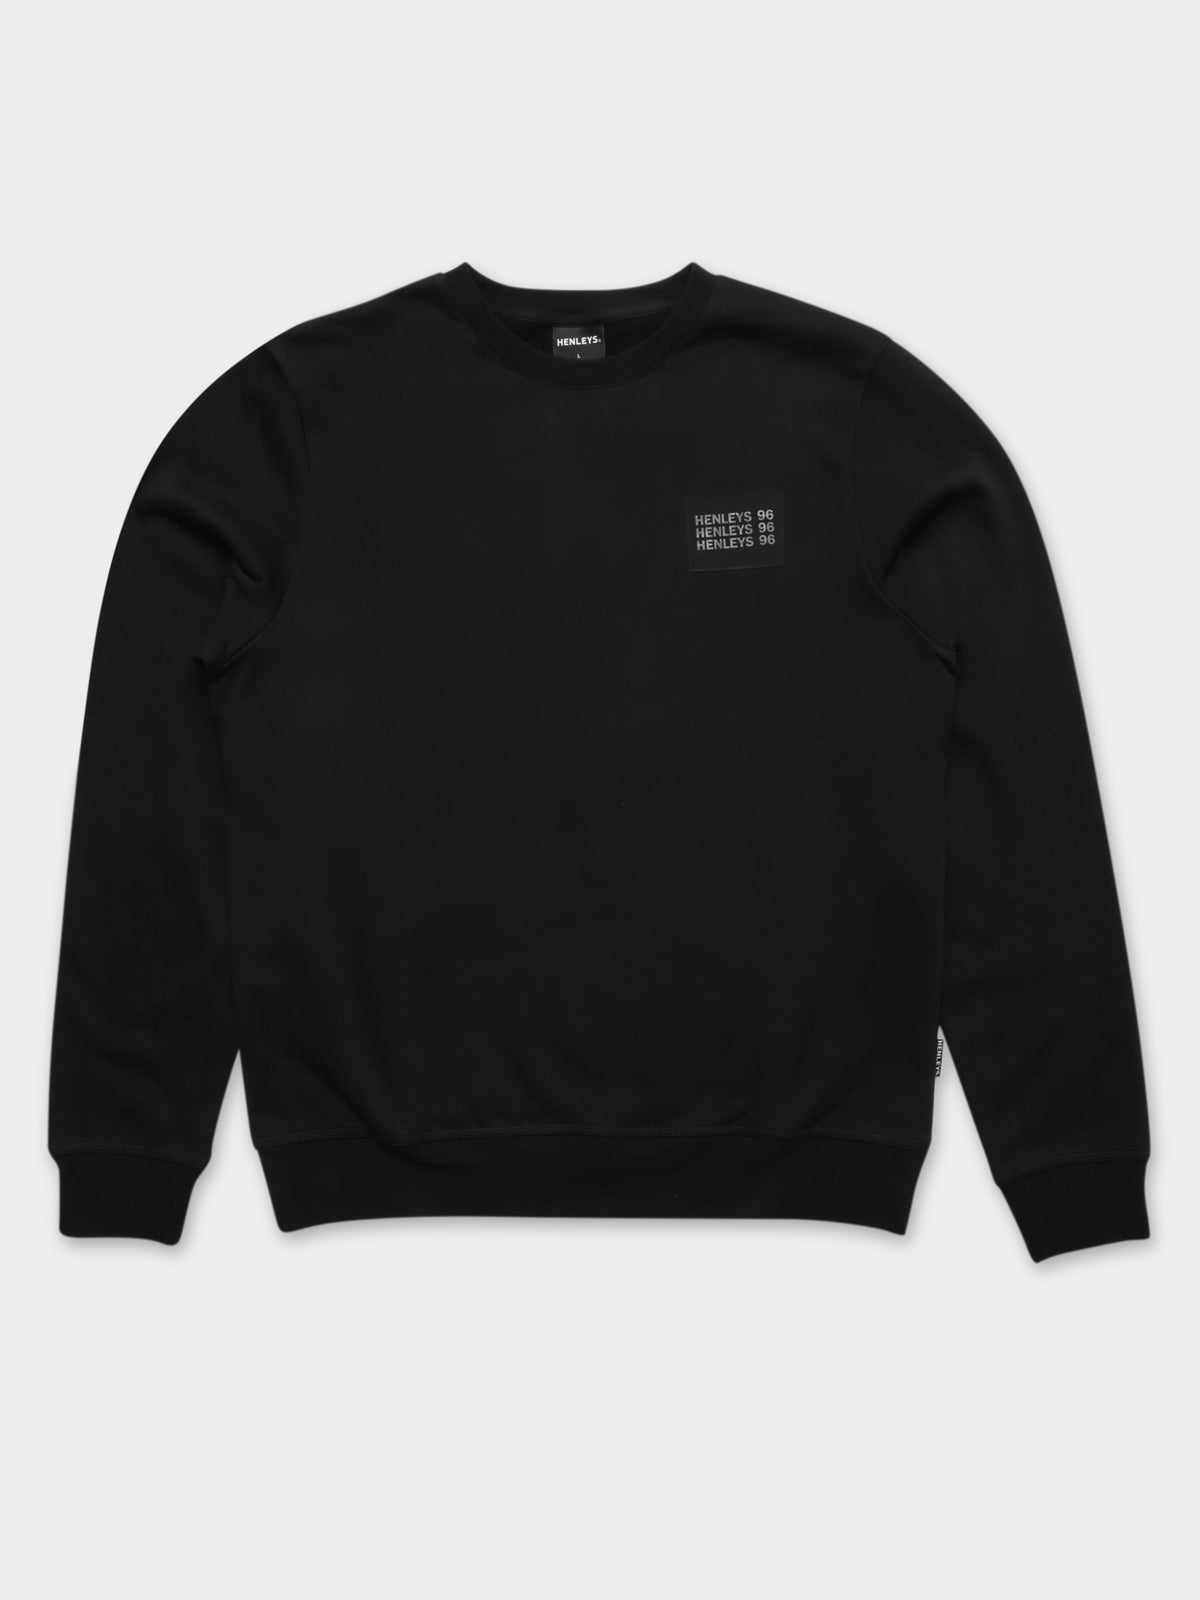 Rivera Crew Sweater in Black